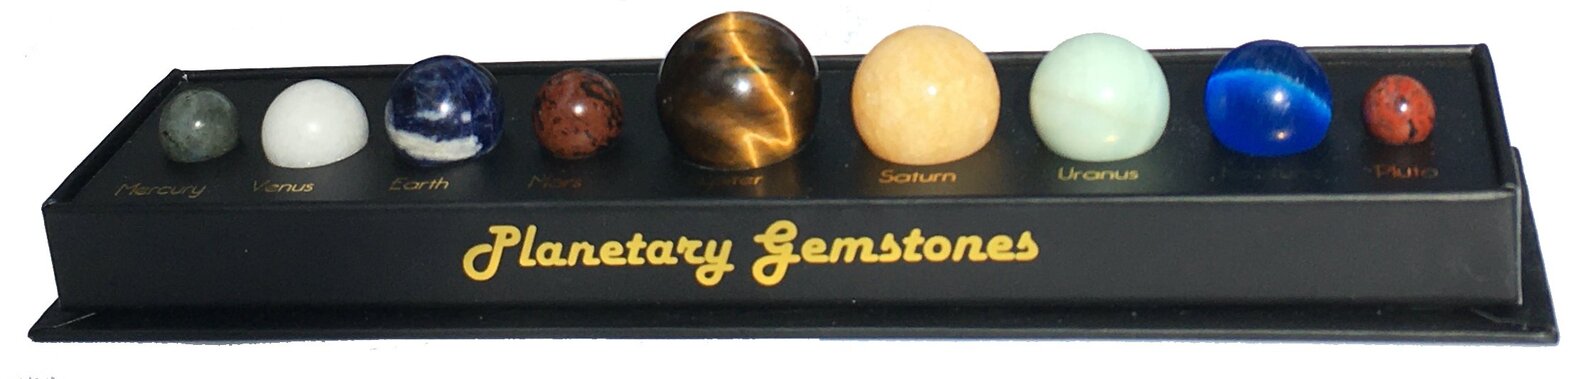 Planetary Gemstones additional image